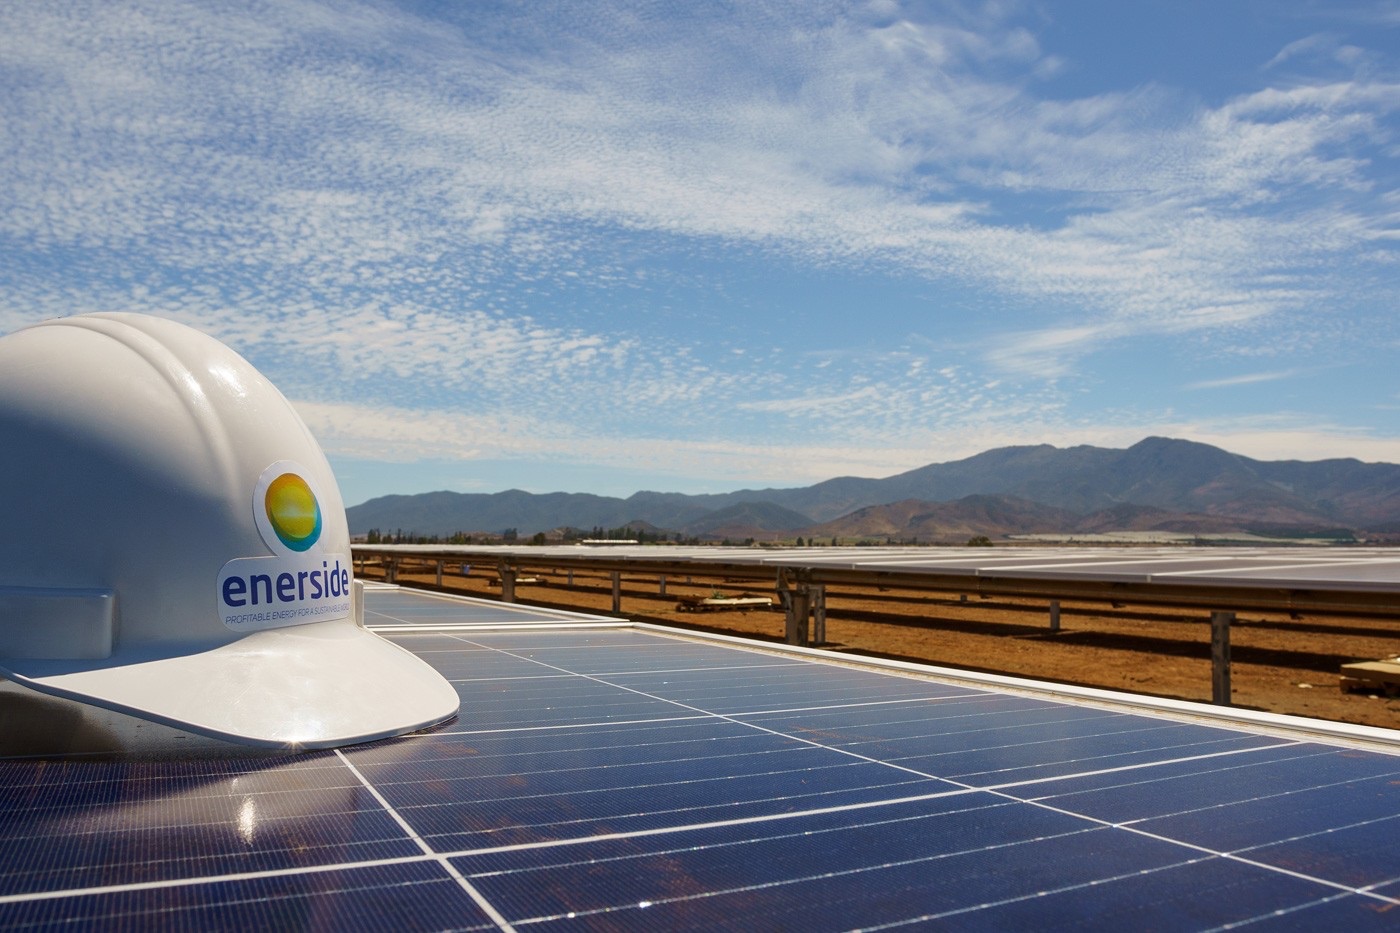 Instalaciones fotovoltaicas de Enerside Energy. FOTO: Enerside Energy